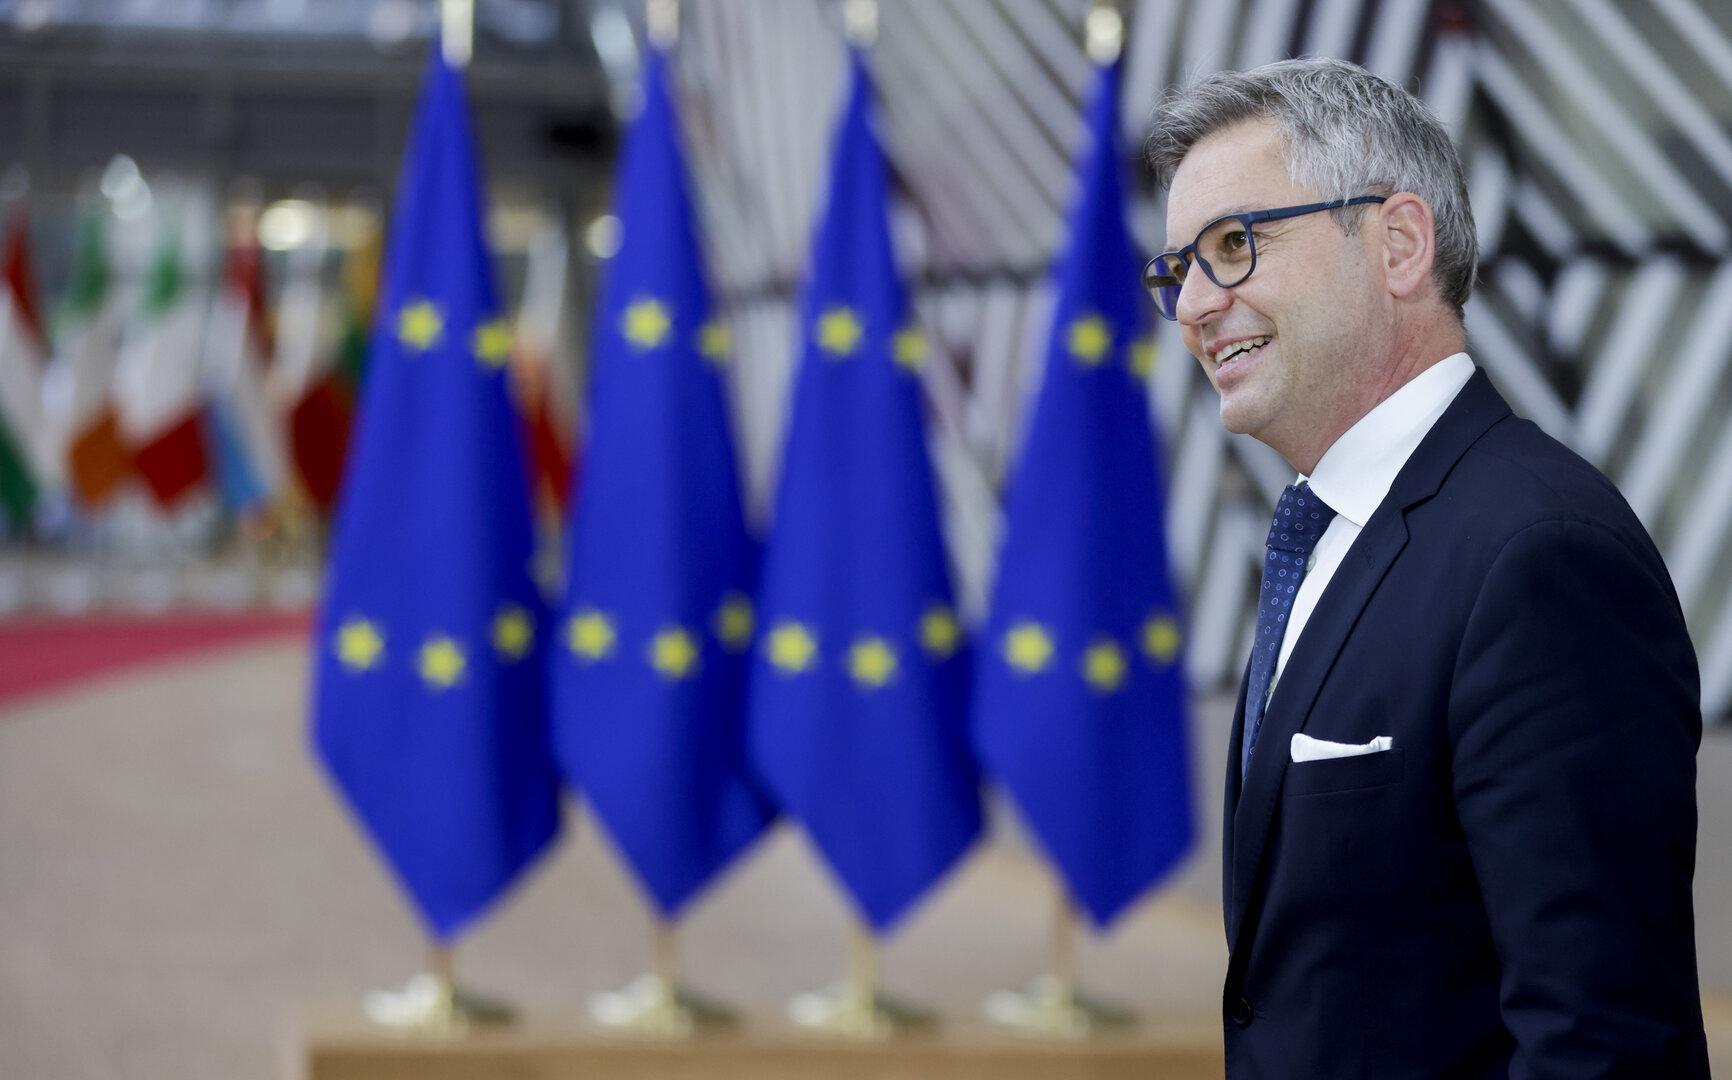 Regierung einigt sich: Finanzminister Magnus Brunner als EU-Kommissar nominiert